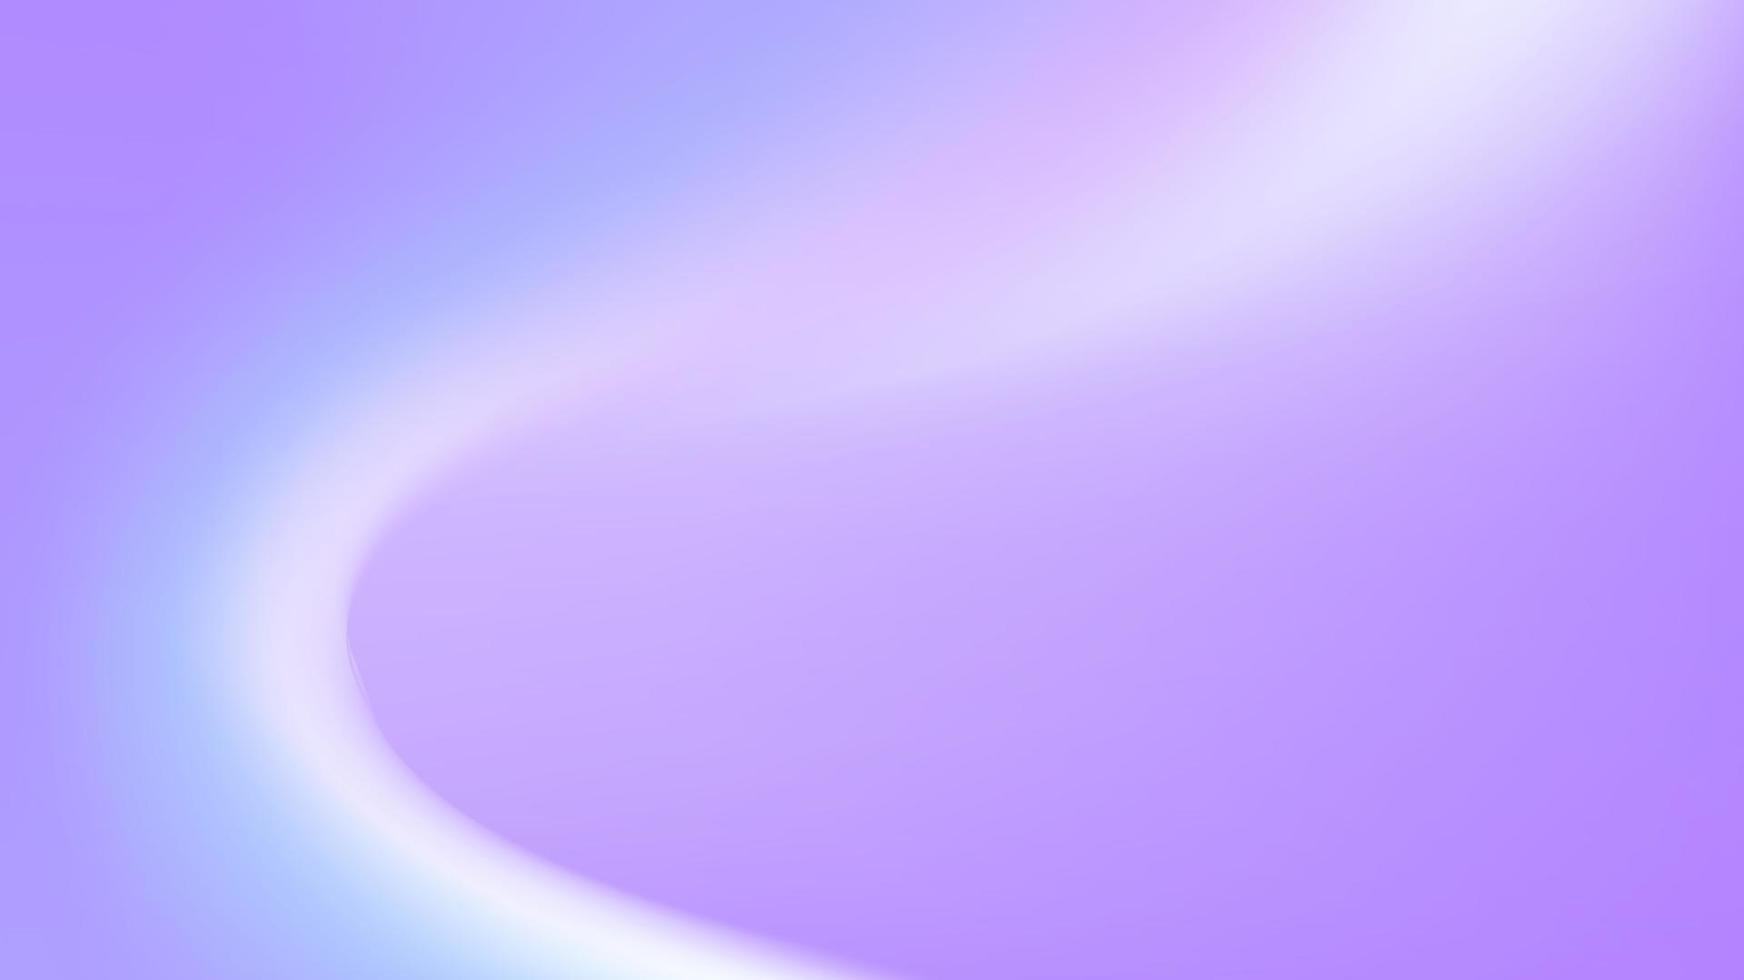 purple gradient background vector art